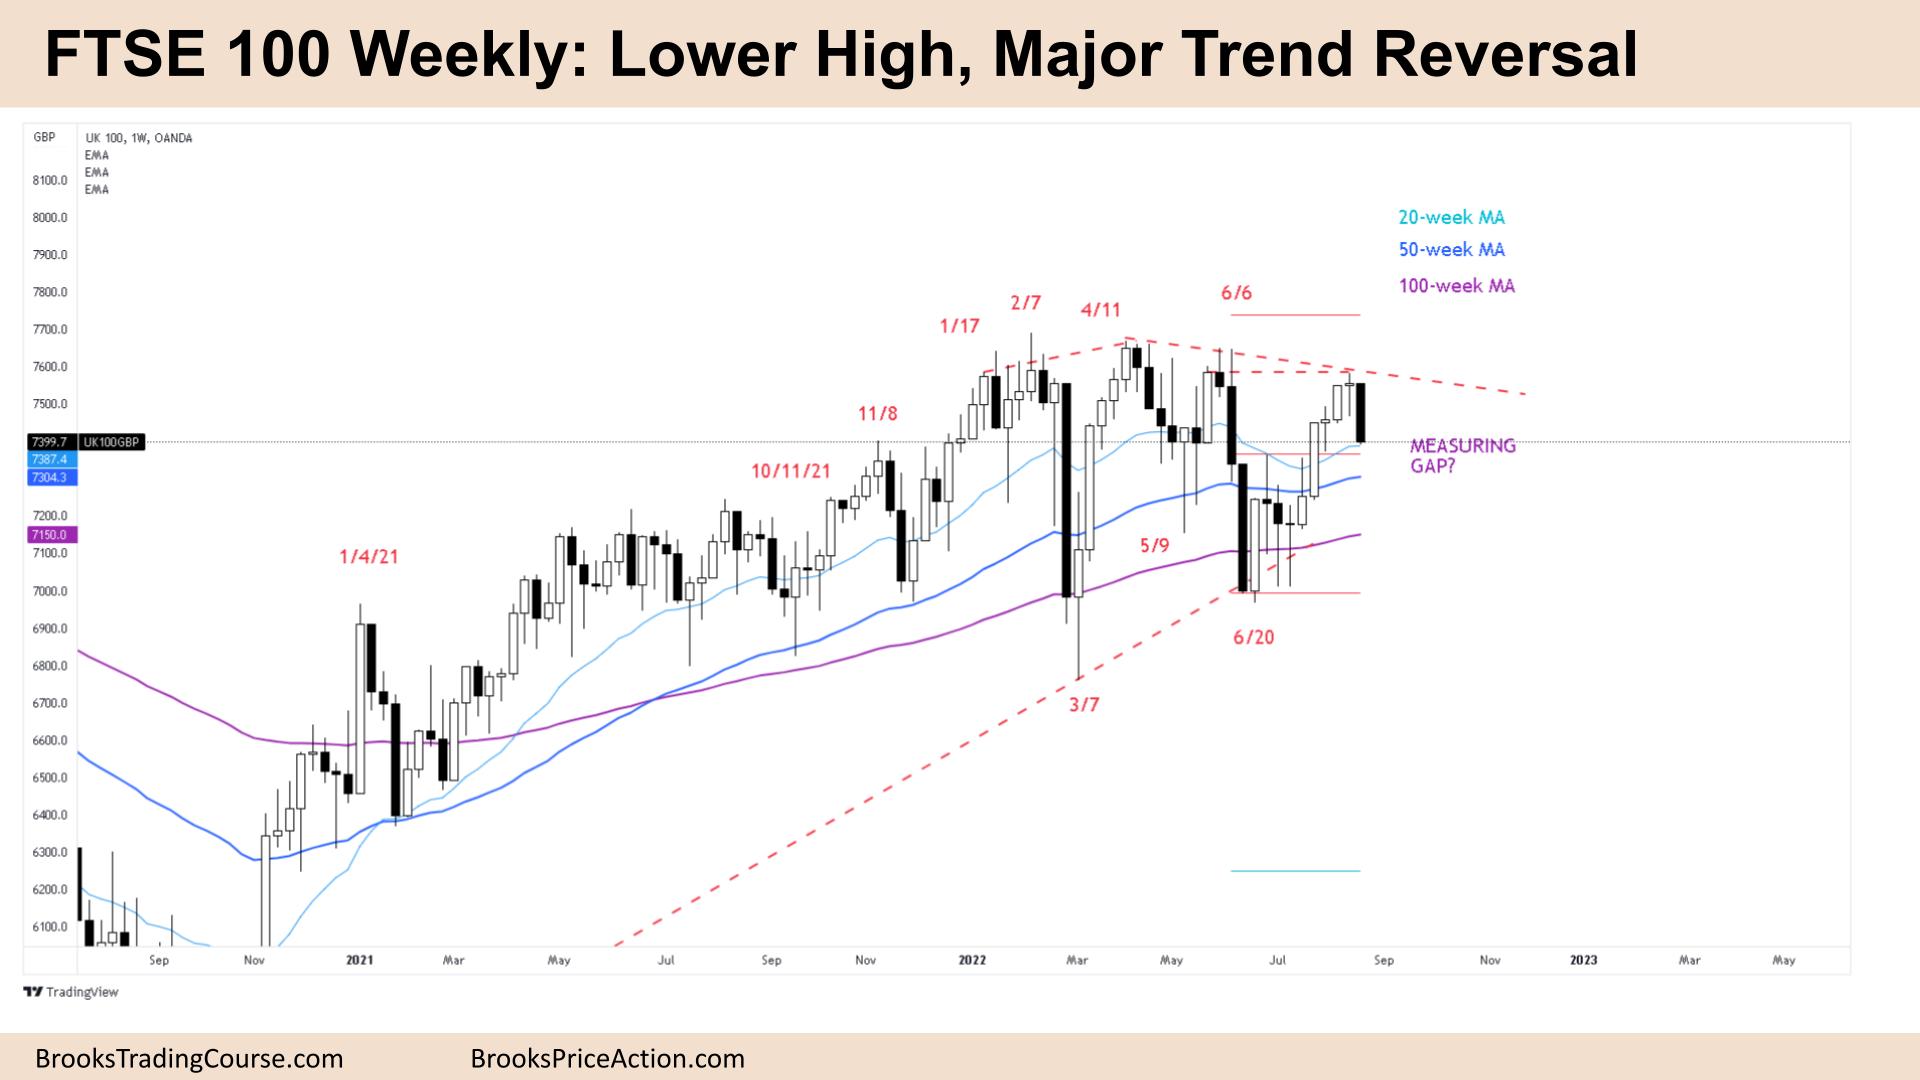 FTSE 100 Lower High, Major Trend Reversal